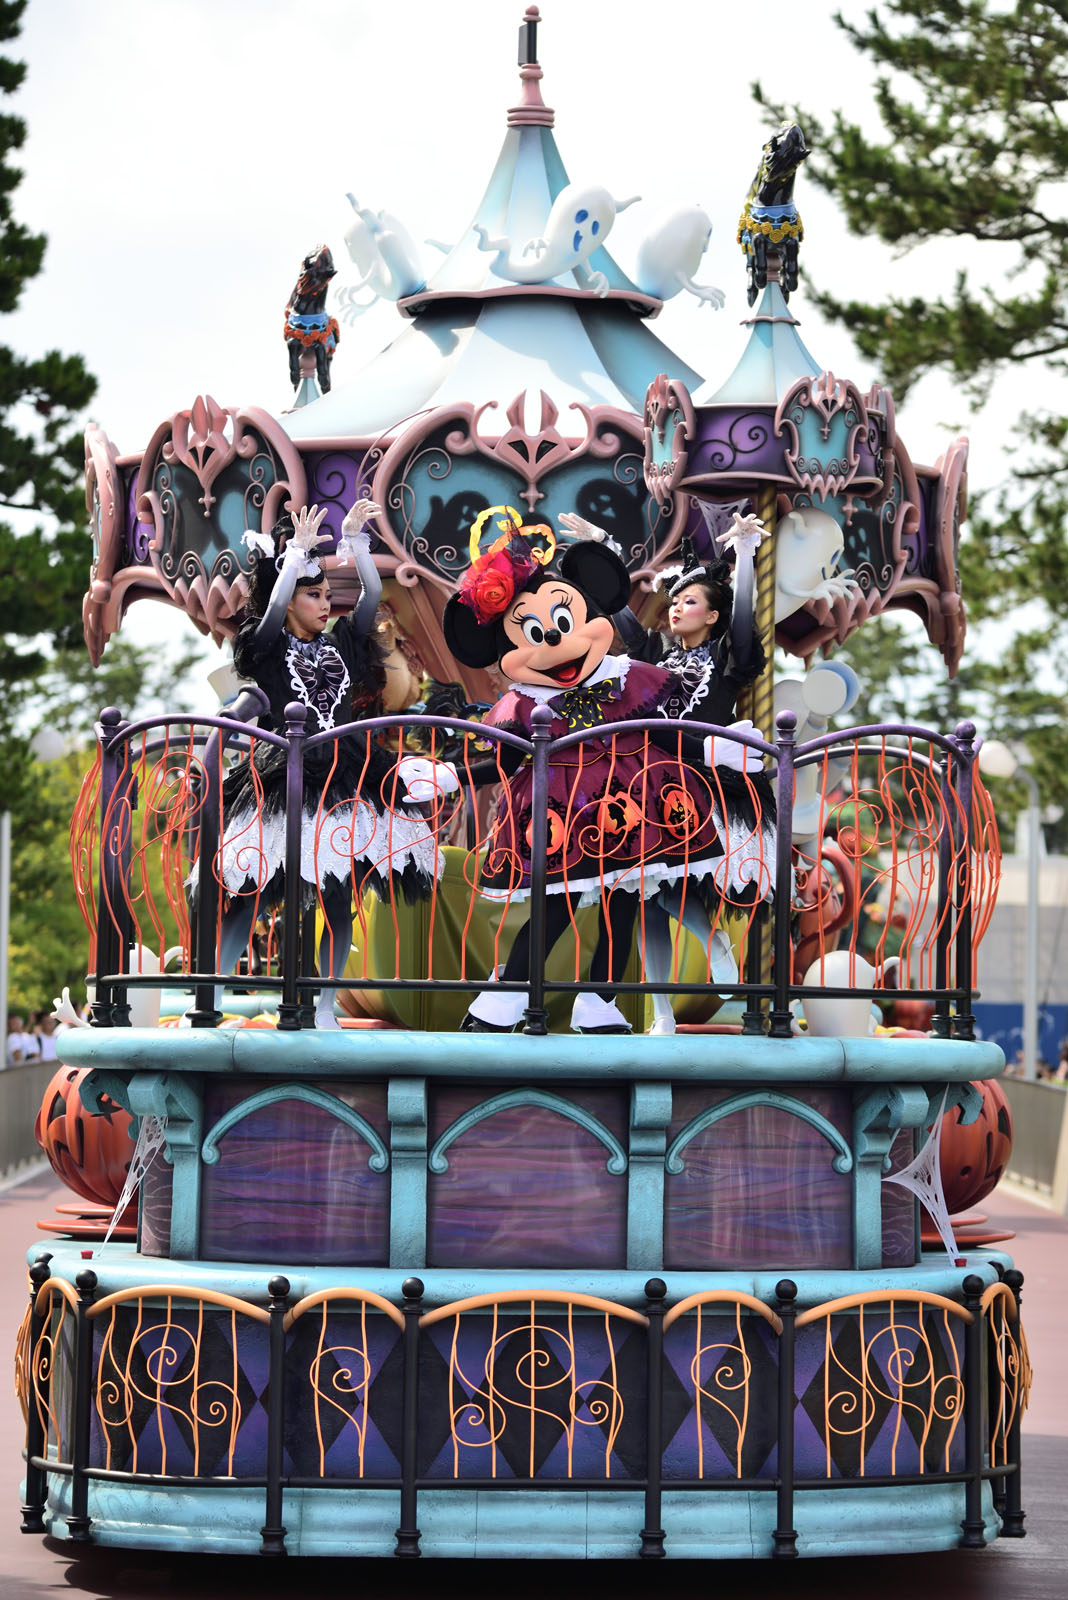 パレード停止はプラザの1回のみ Tdl ディズニー ハロウィーン19 詳細発表 Disney Colors Blog